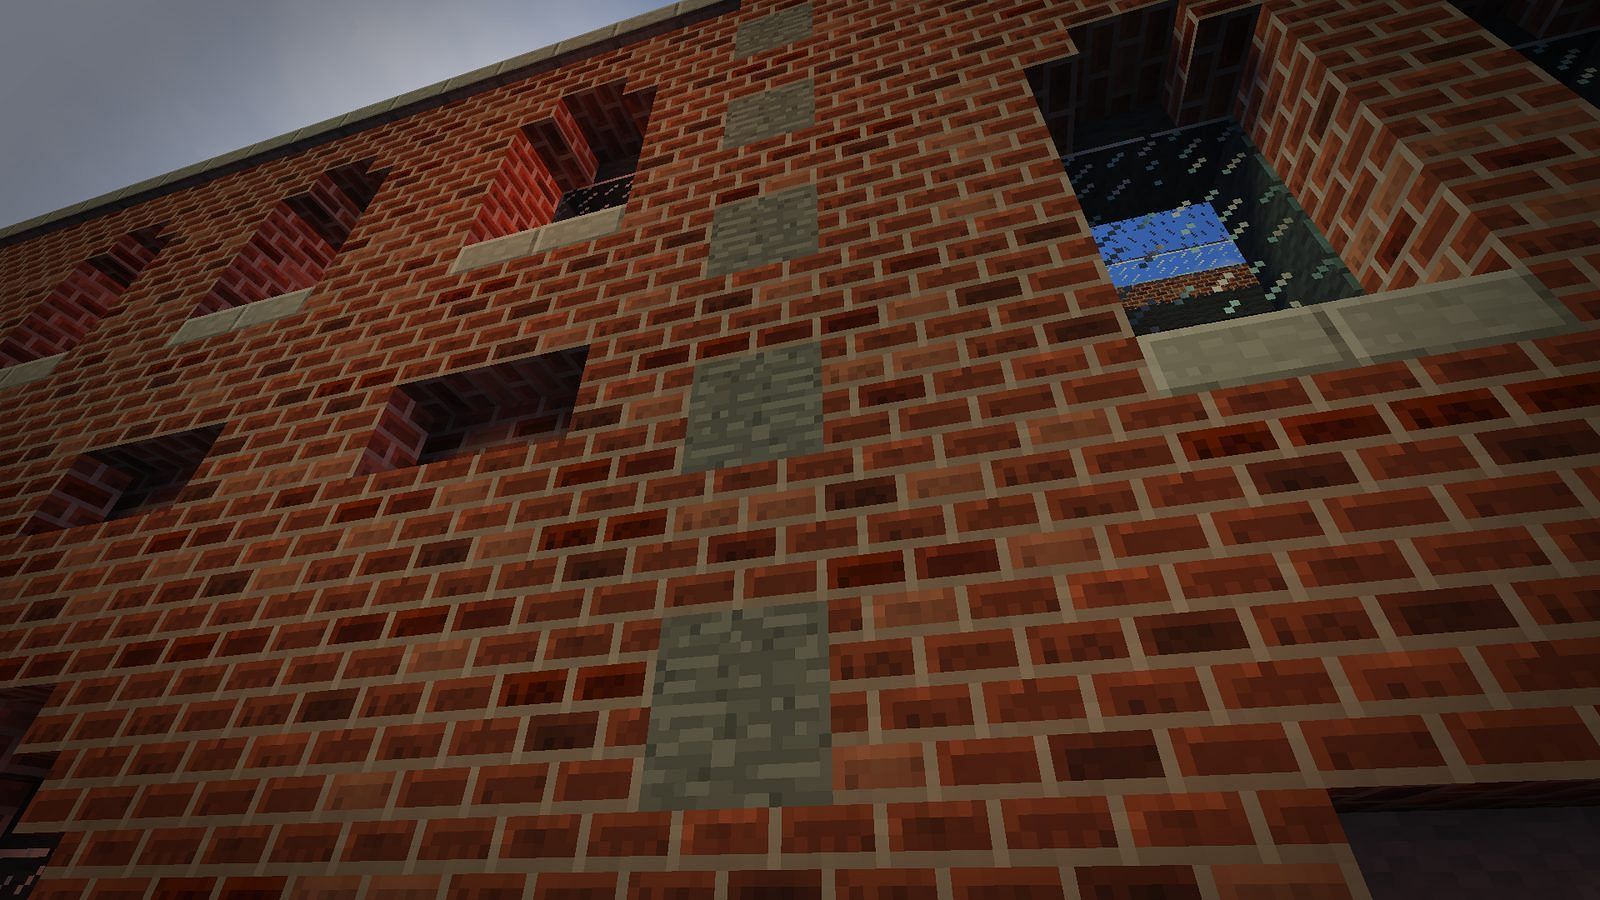 Bricks in Minecraft (Image via Minecraft)